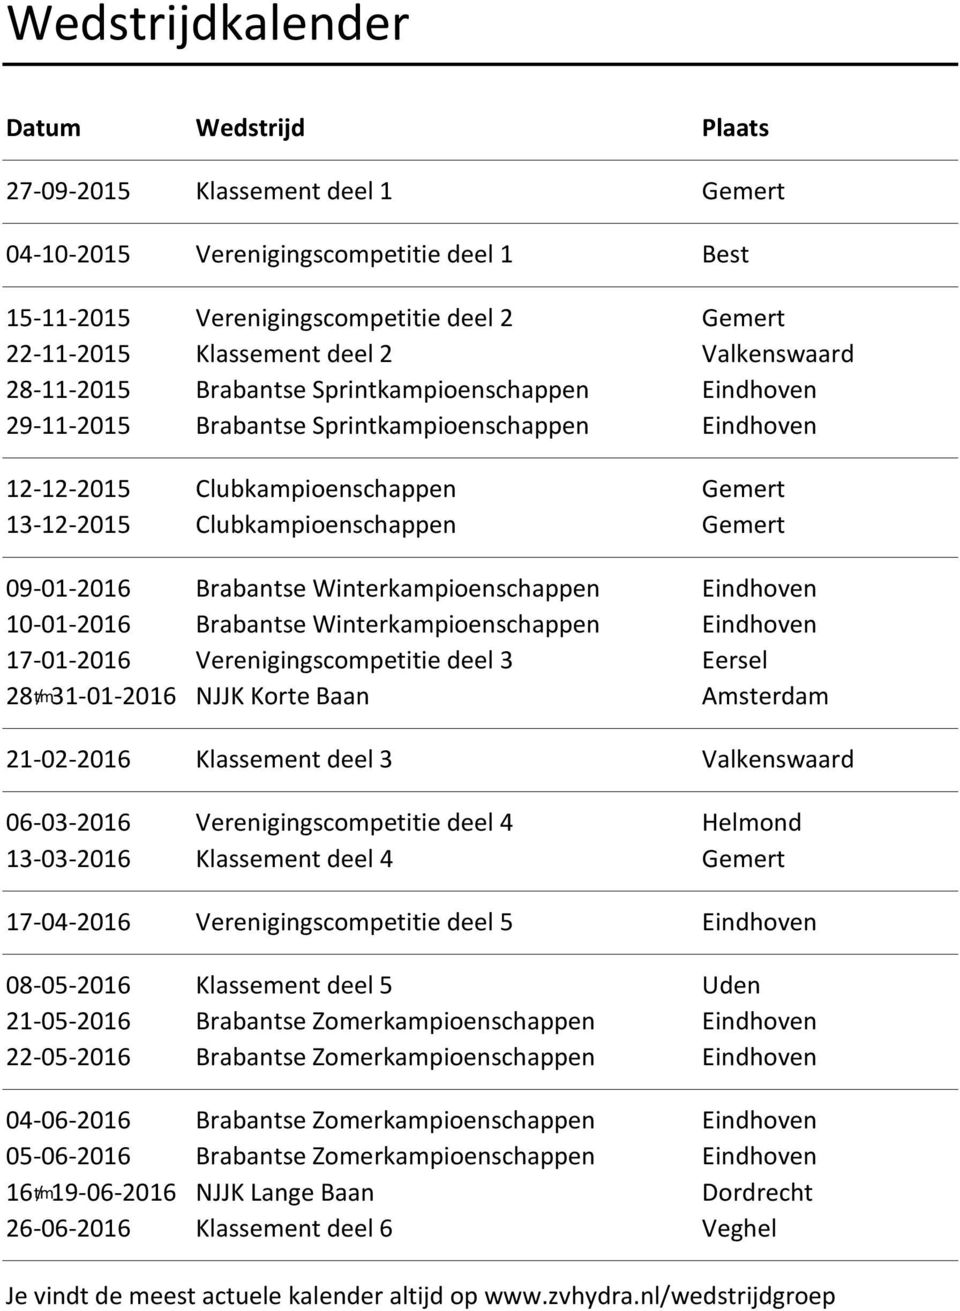 09-01-2016 Brabantse Winterkampioenschappen Eindhoven 10-01-2016 Brabantse Winterkampioenschappen Eindhoven 17-01-2016 Verenigingscompetitie deel 3 Eersel 28 t/m 31-01-2016 NJJK Korte Baan Amsterdam